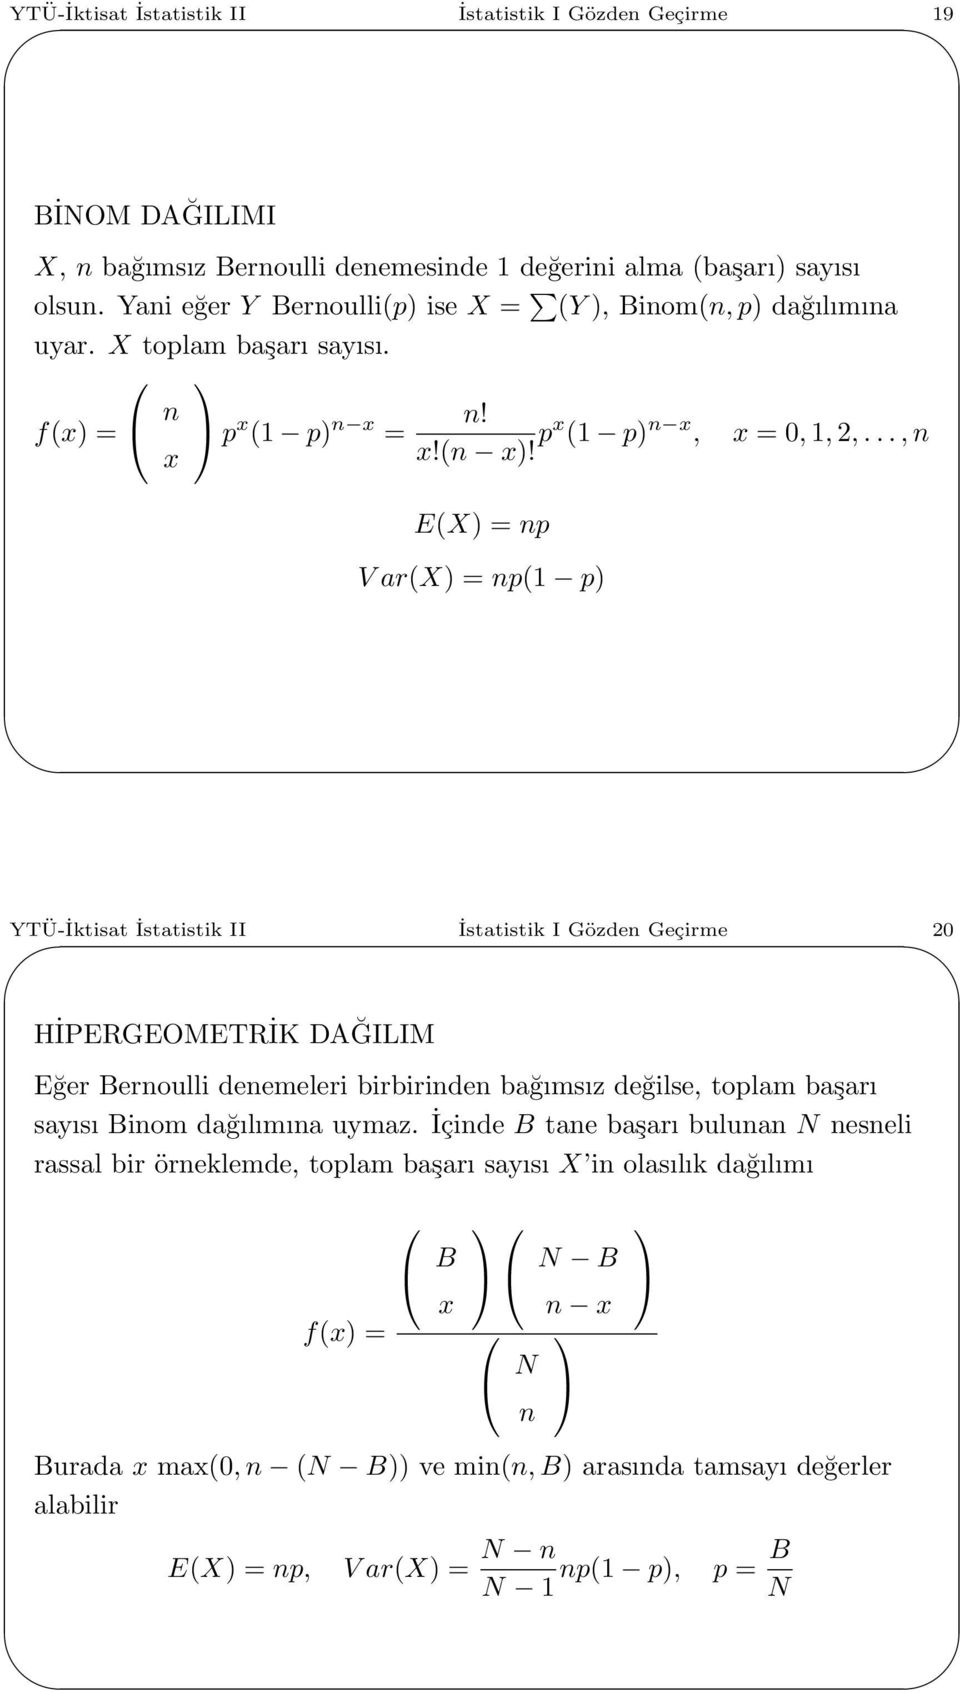 ..,n E(X) = np V ar(x) = np( p) YTÜ-İktisat İstatistik II İstatistik I Gözden Geçirme 2 HİPERGEOMETRİK DAĞILIM Eğer Bernoulli denemeleri birbirinden bağımsız değilse, toplam başarı